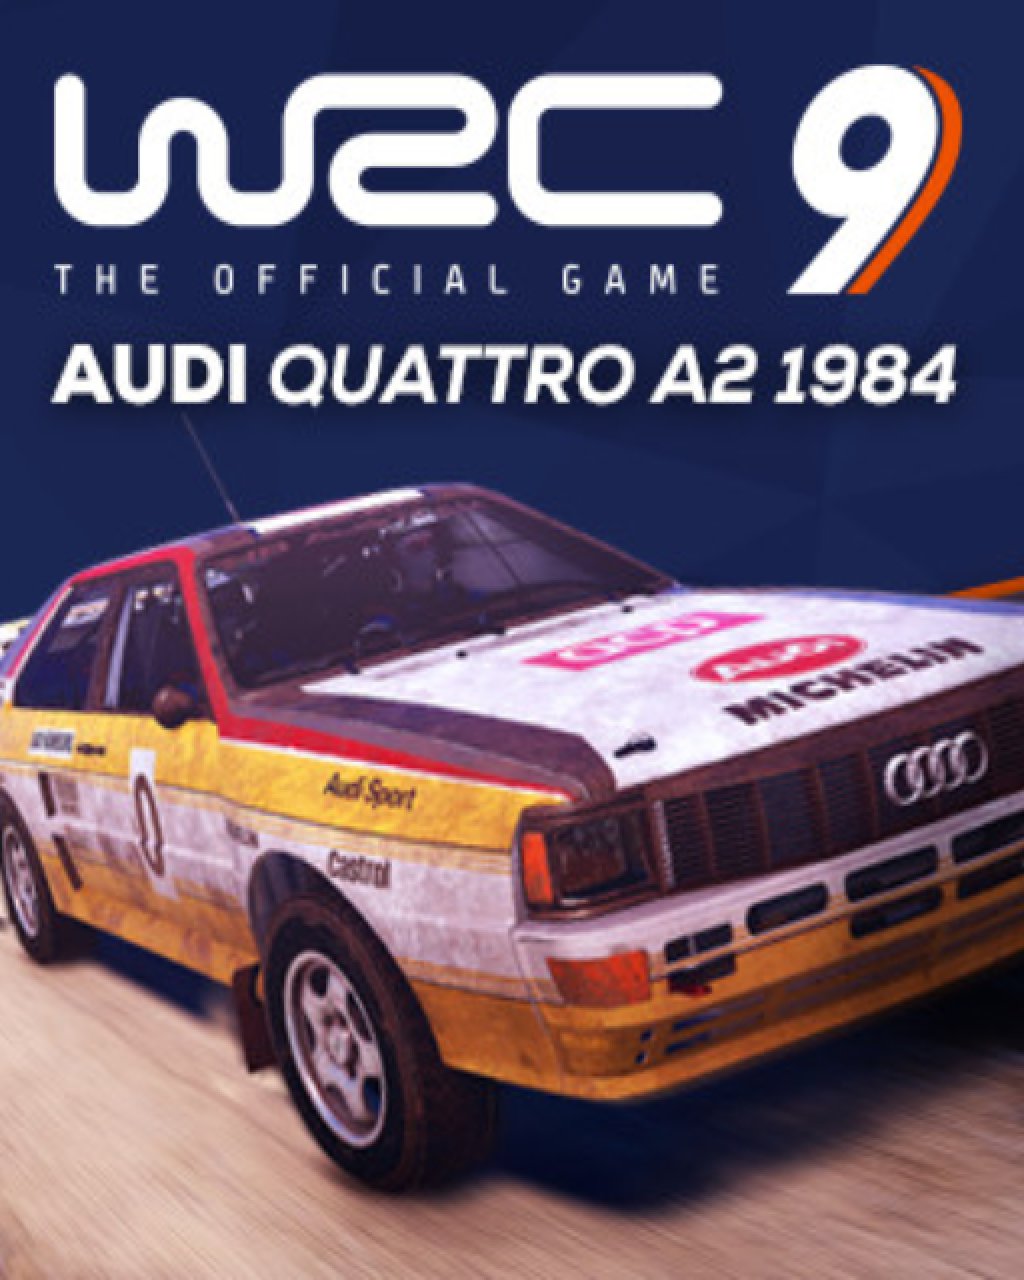 ESD WRC 9 Audi Quattro A2 1984